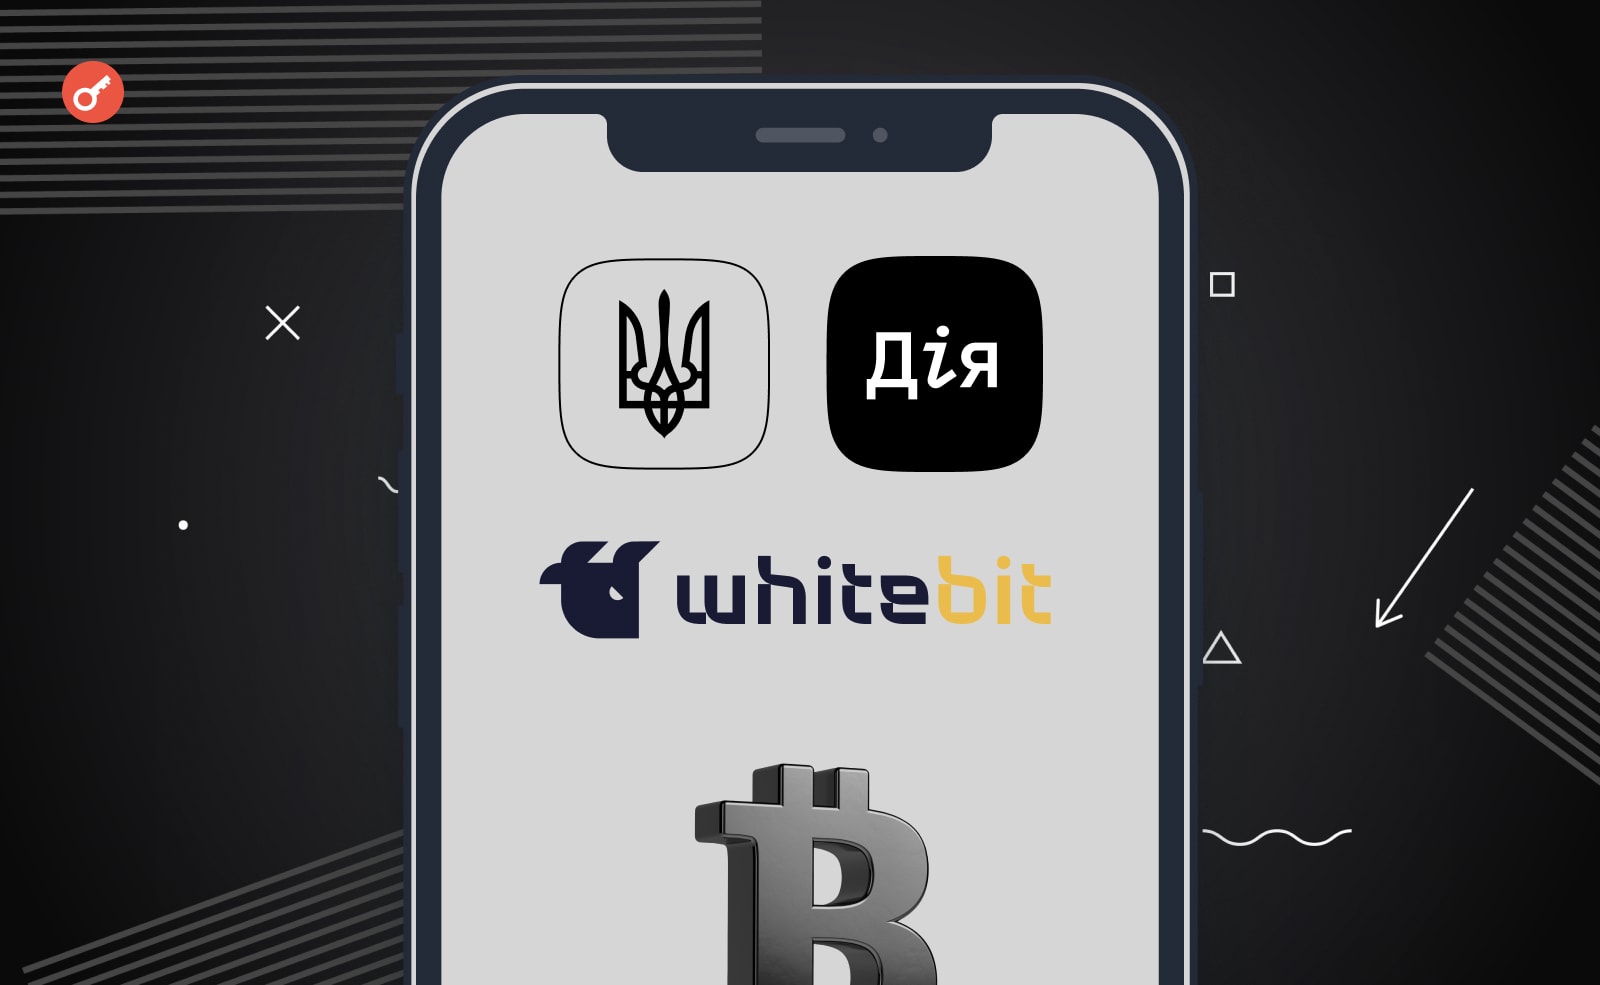 Открыта регистрация на бесплатный курс по крипте и блокчейну для украинцев от Минцифры и WhiteBIT. Заглавный коллаж новости.